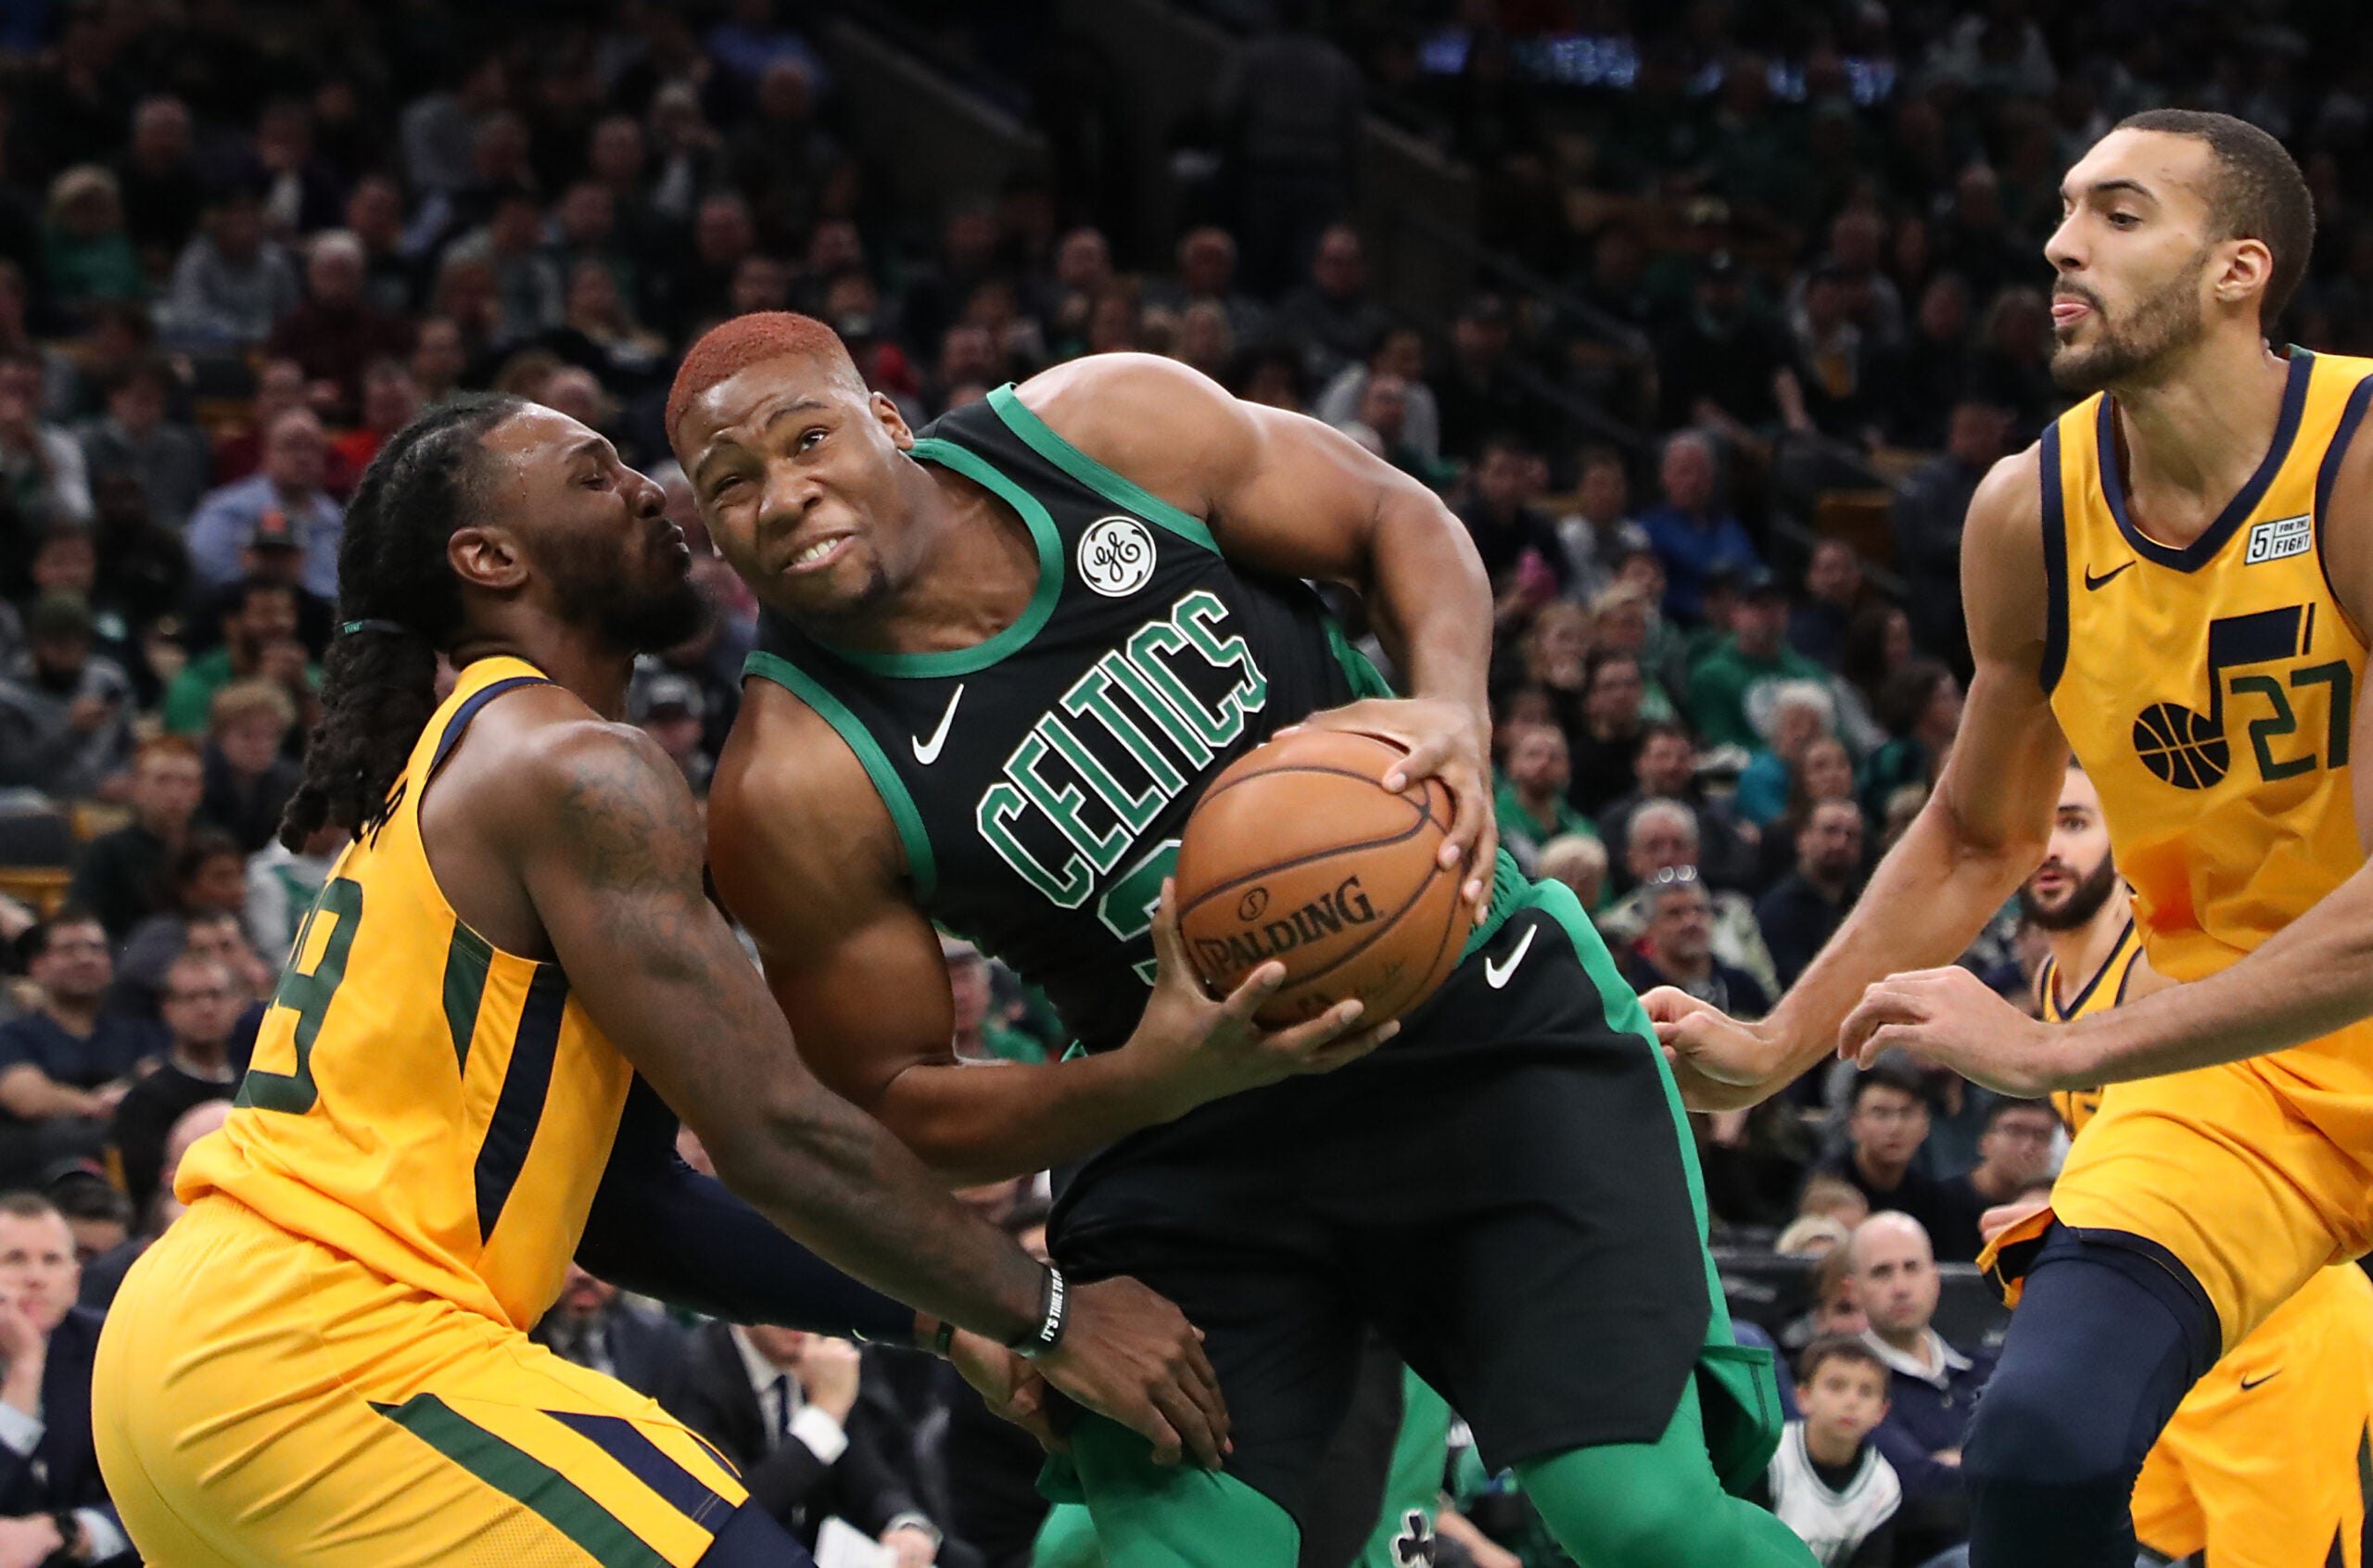 CelticsBlog exit interview: Guerschon Yabusele - CelticsBlog